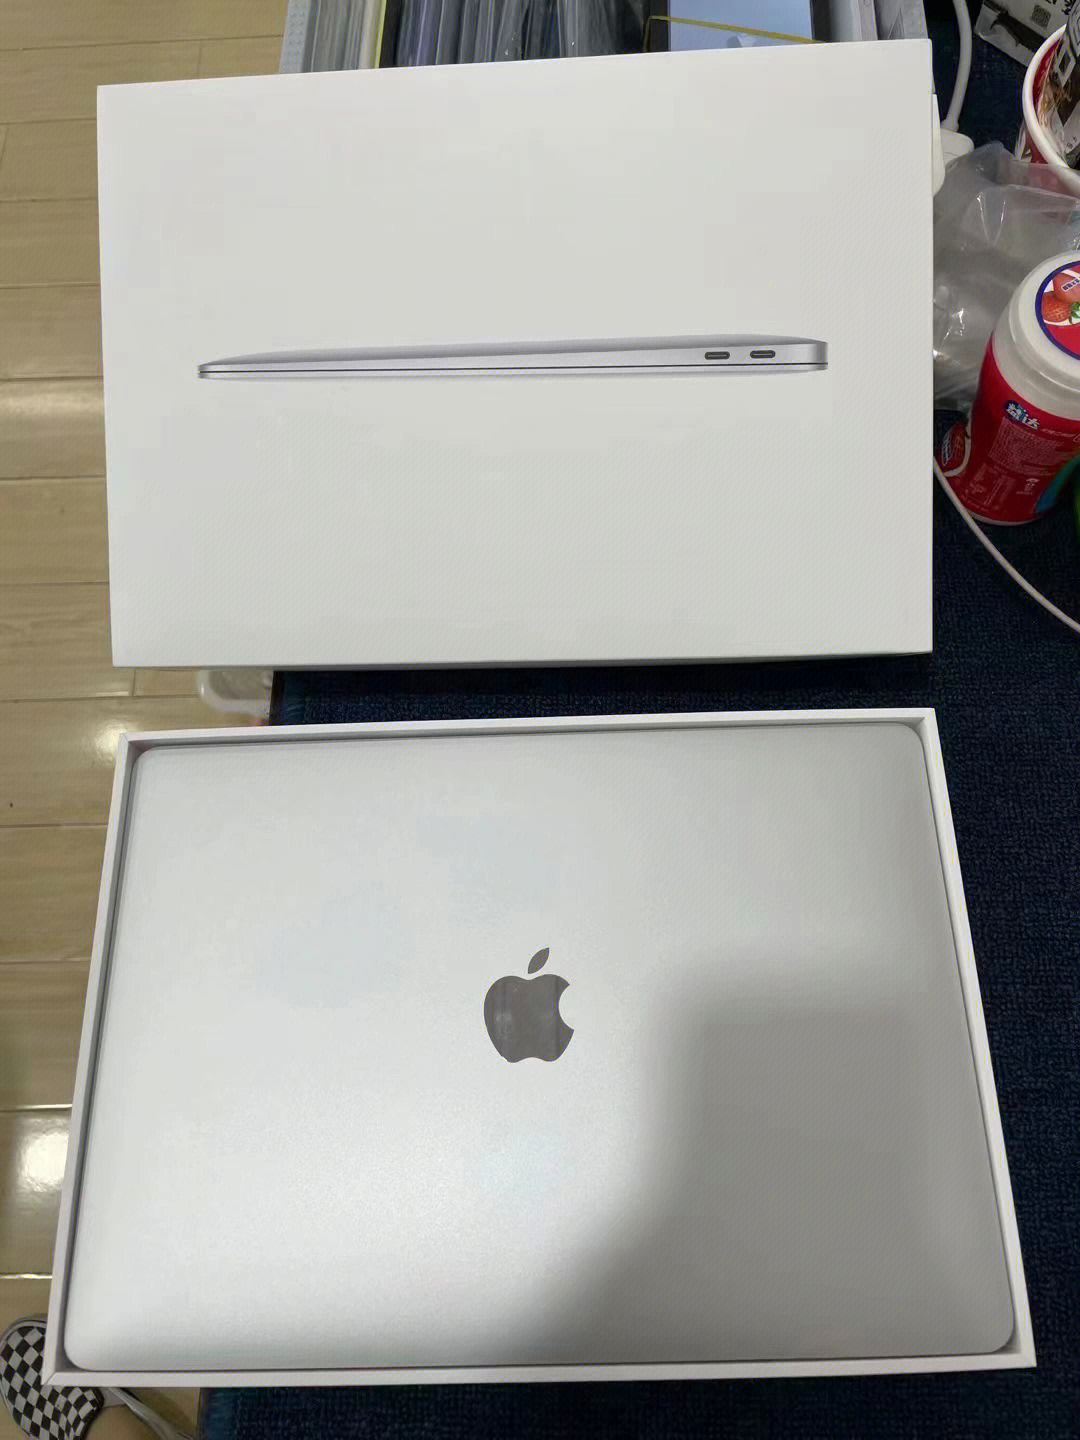 苹果笔记本macbookbookair,13寸,2020款,m1处理器,8 256g,授权店买了2